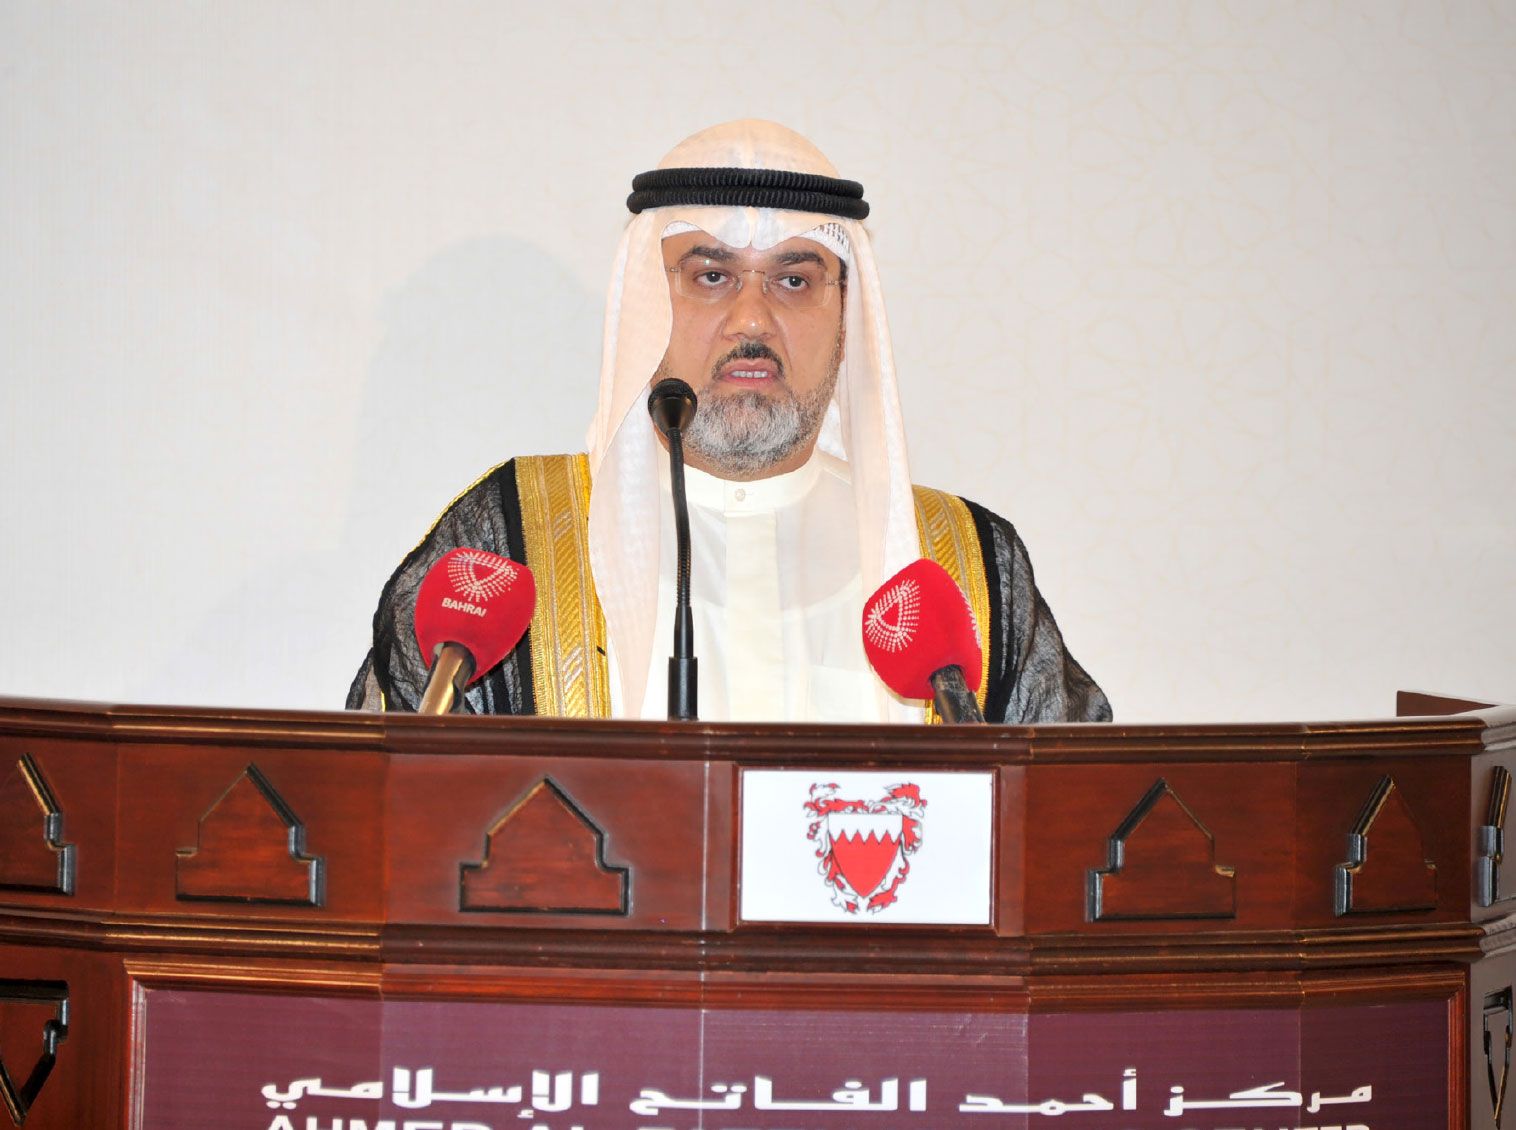 الشيخ فريد المفتاح متحدثاً في الحفل